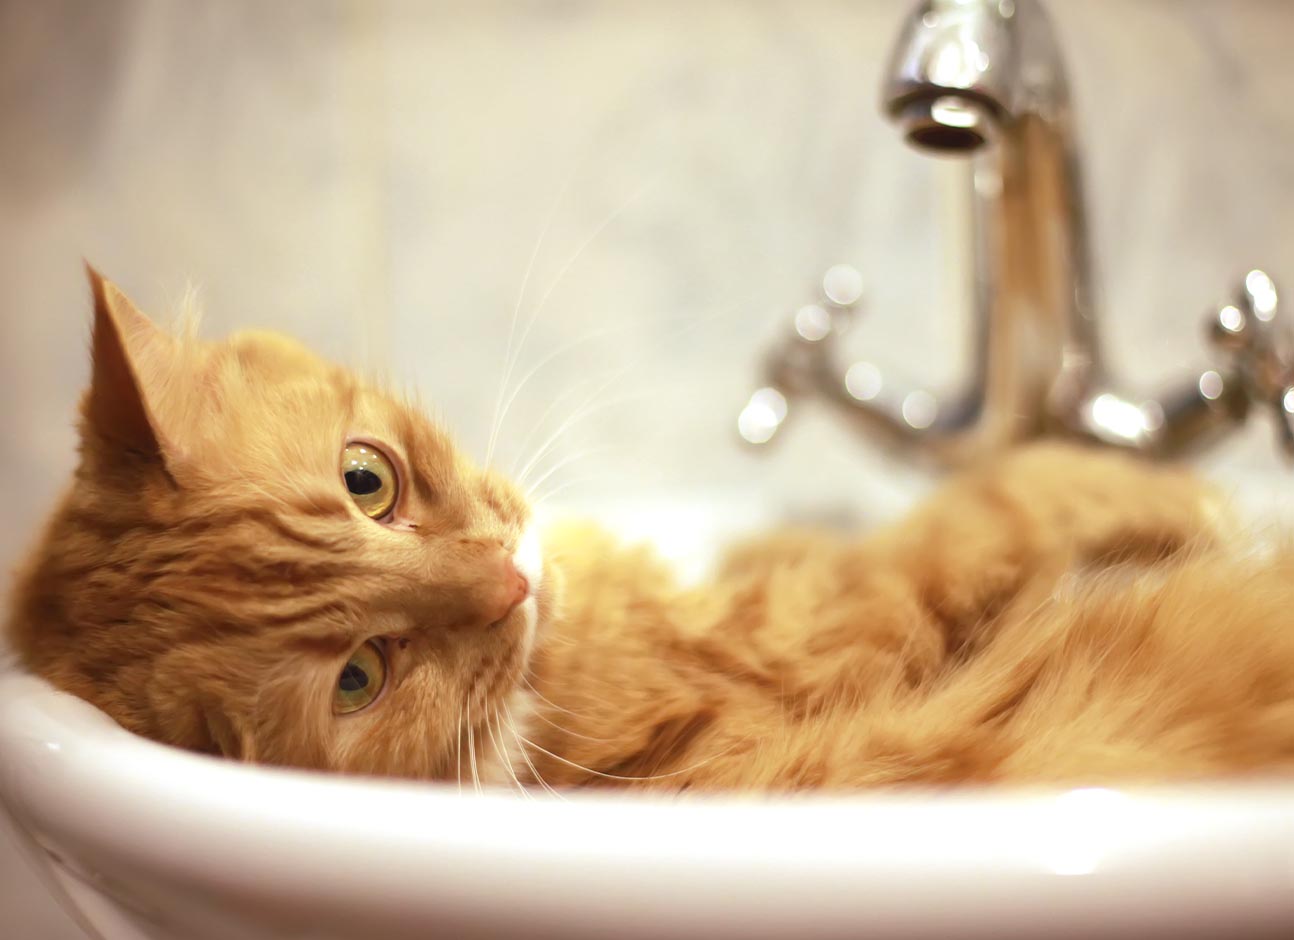 Cat in bath